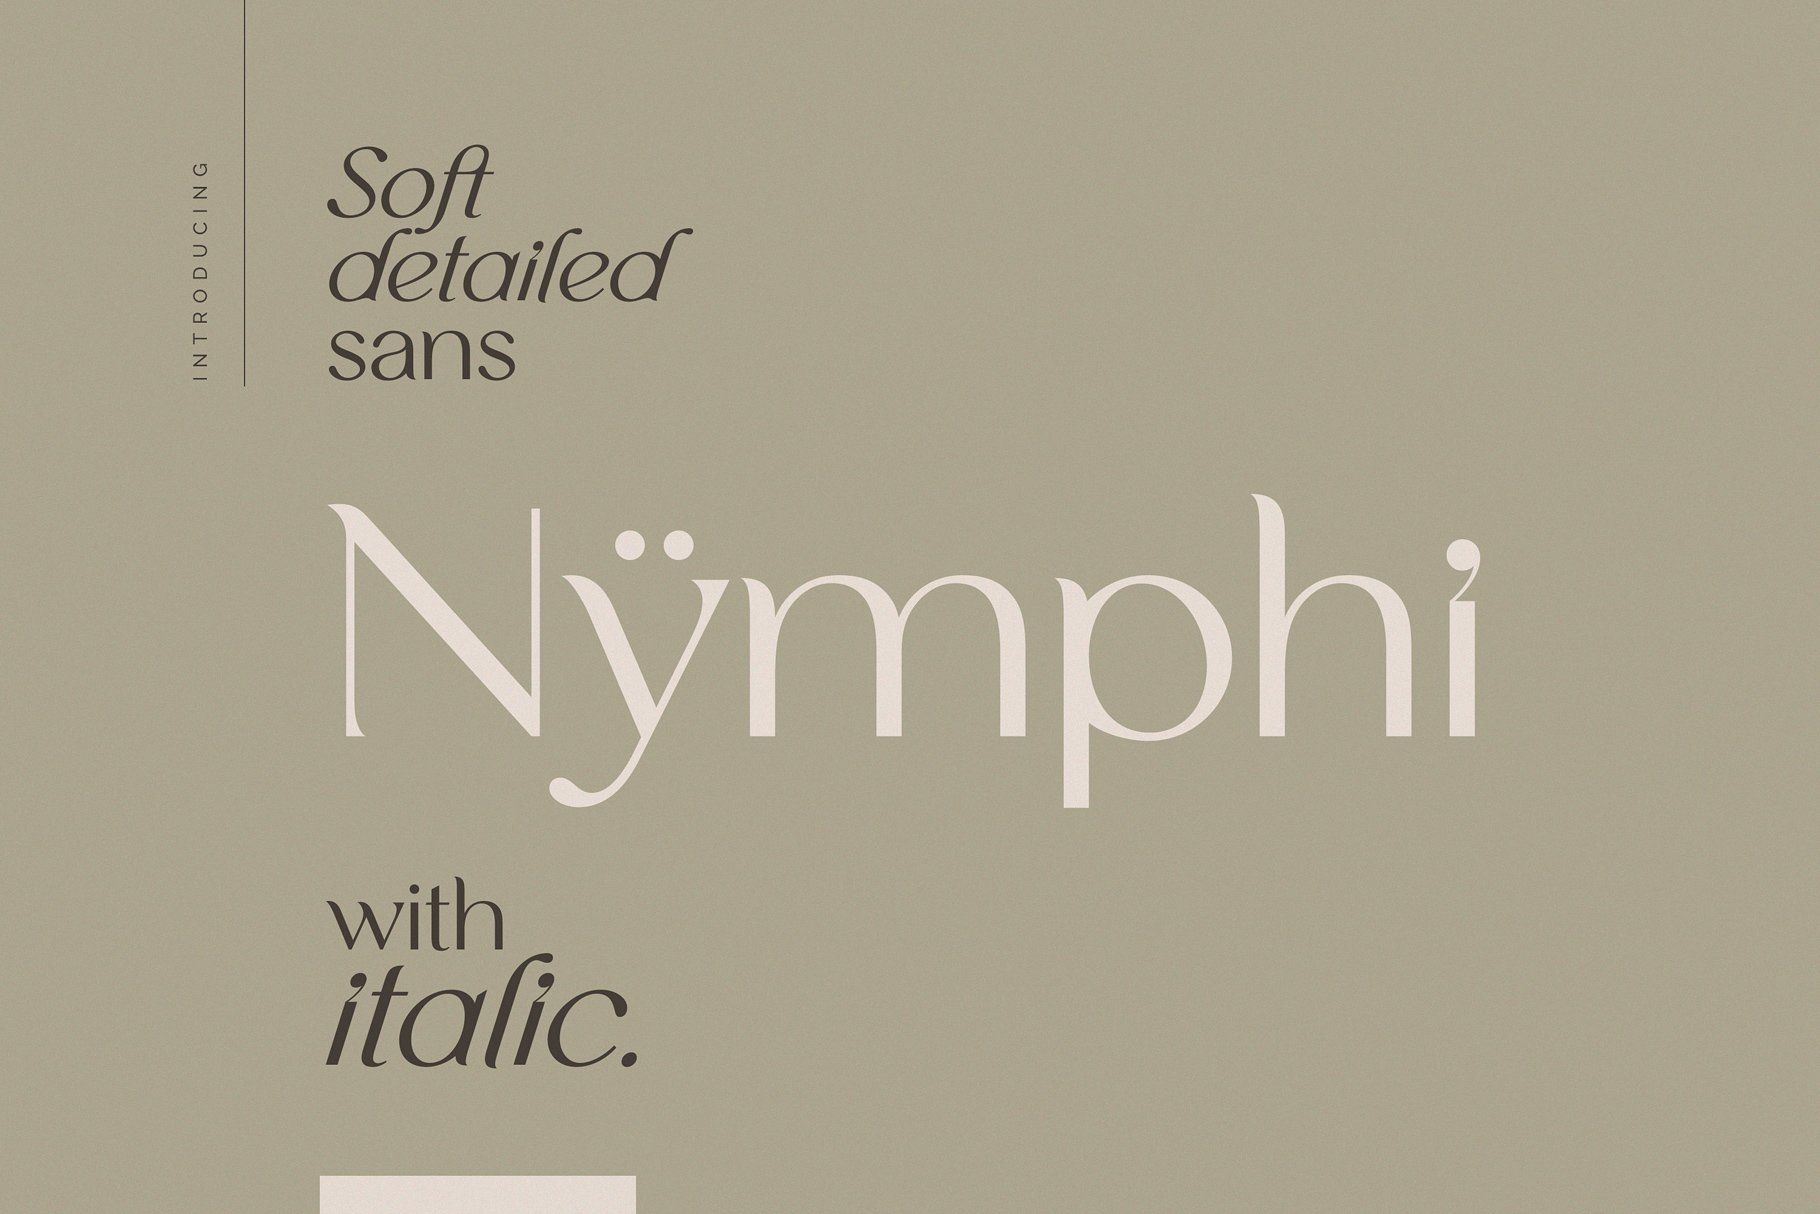 A modern sans serif ypeface